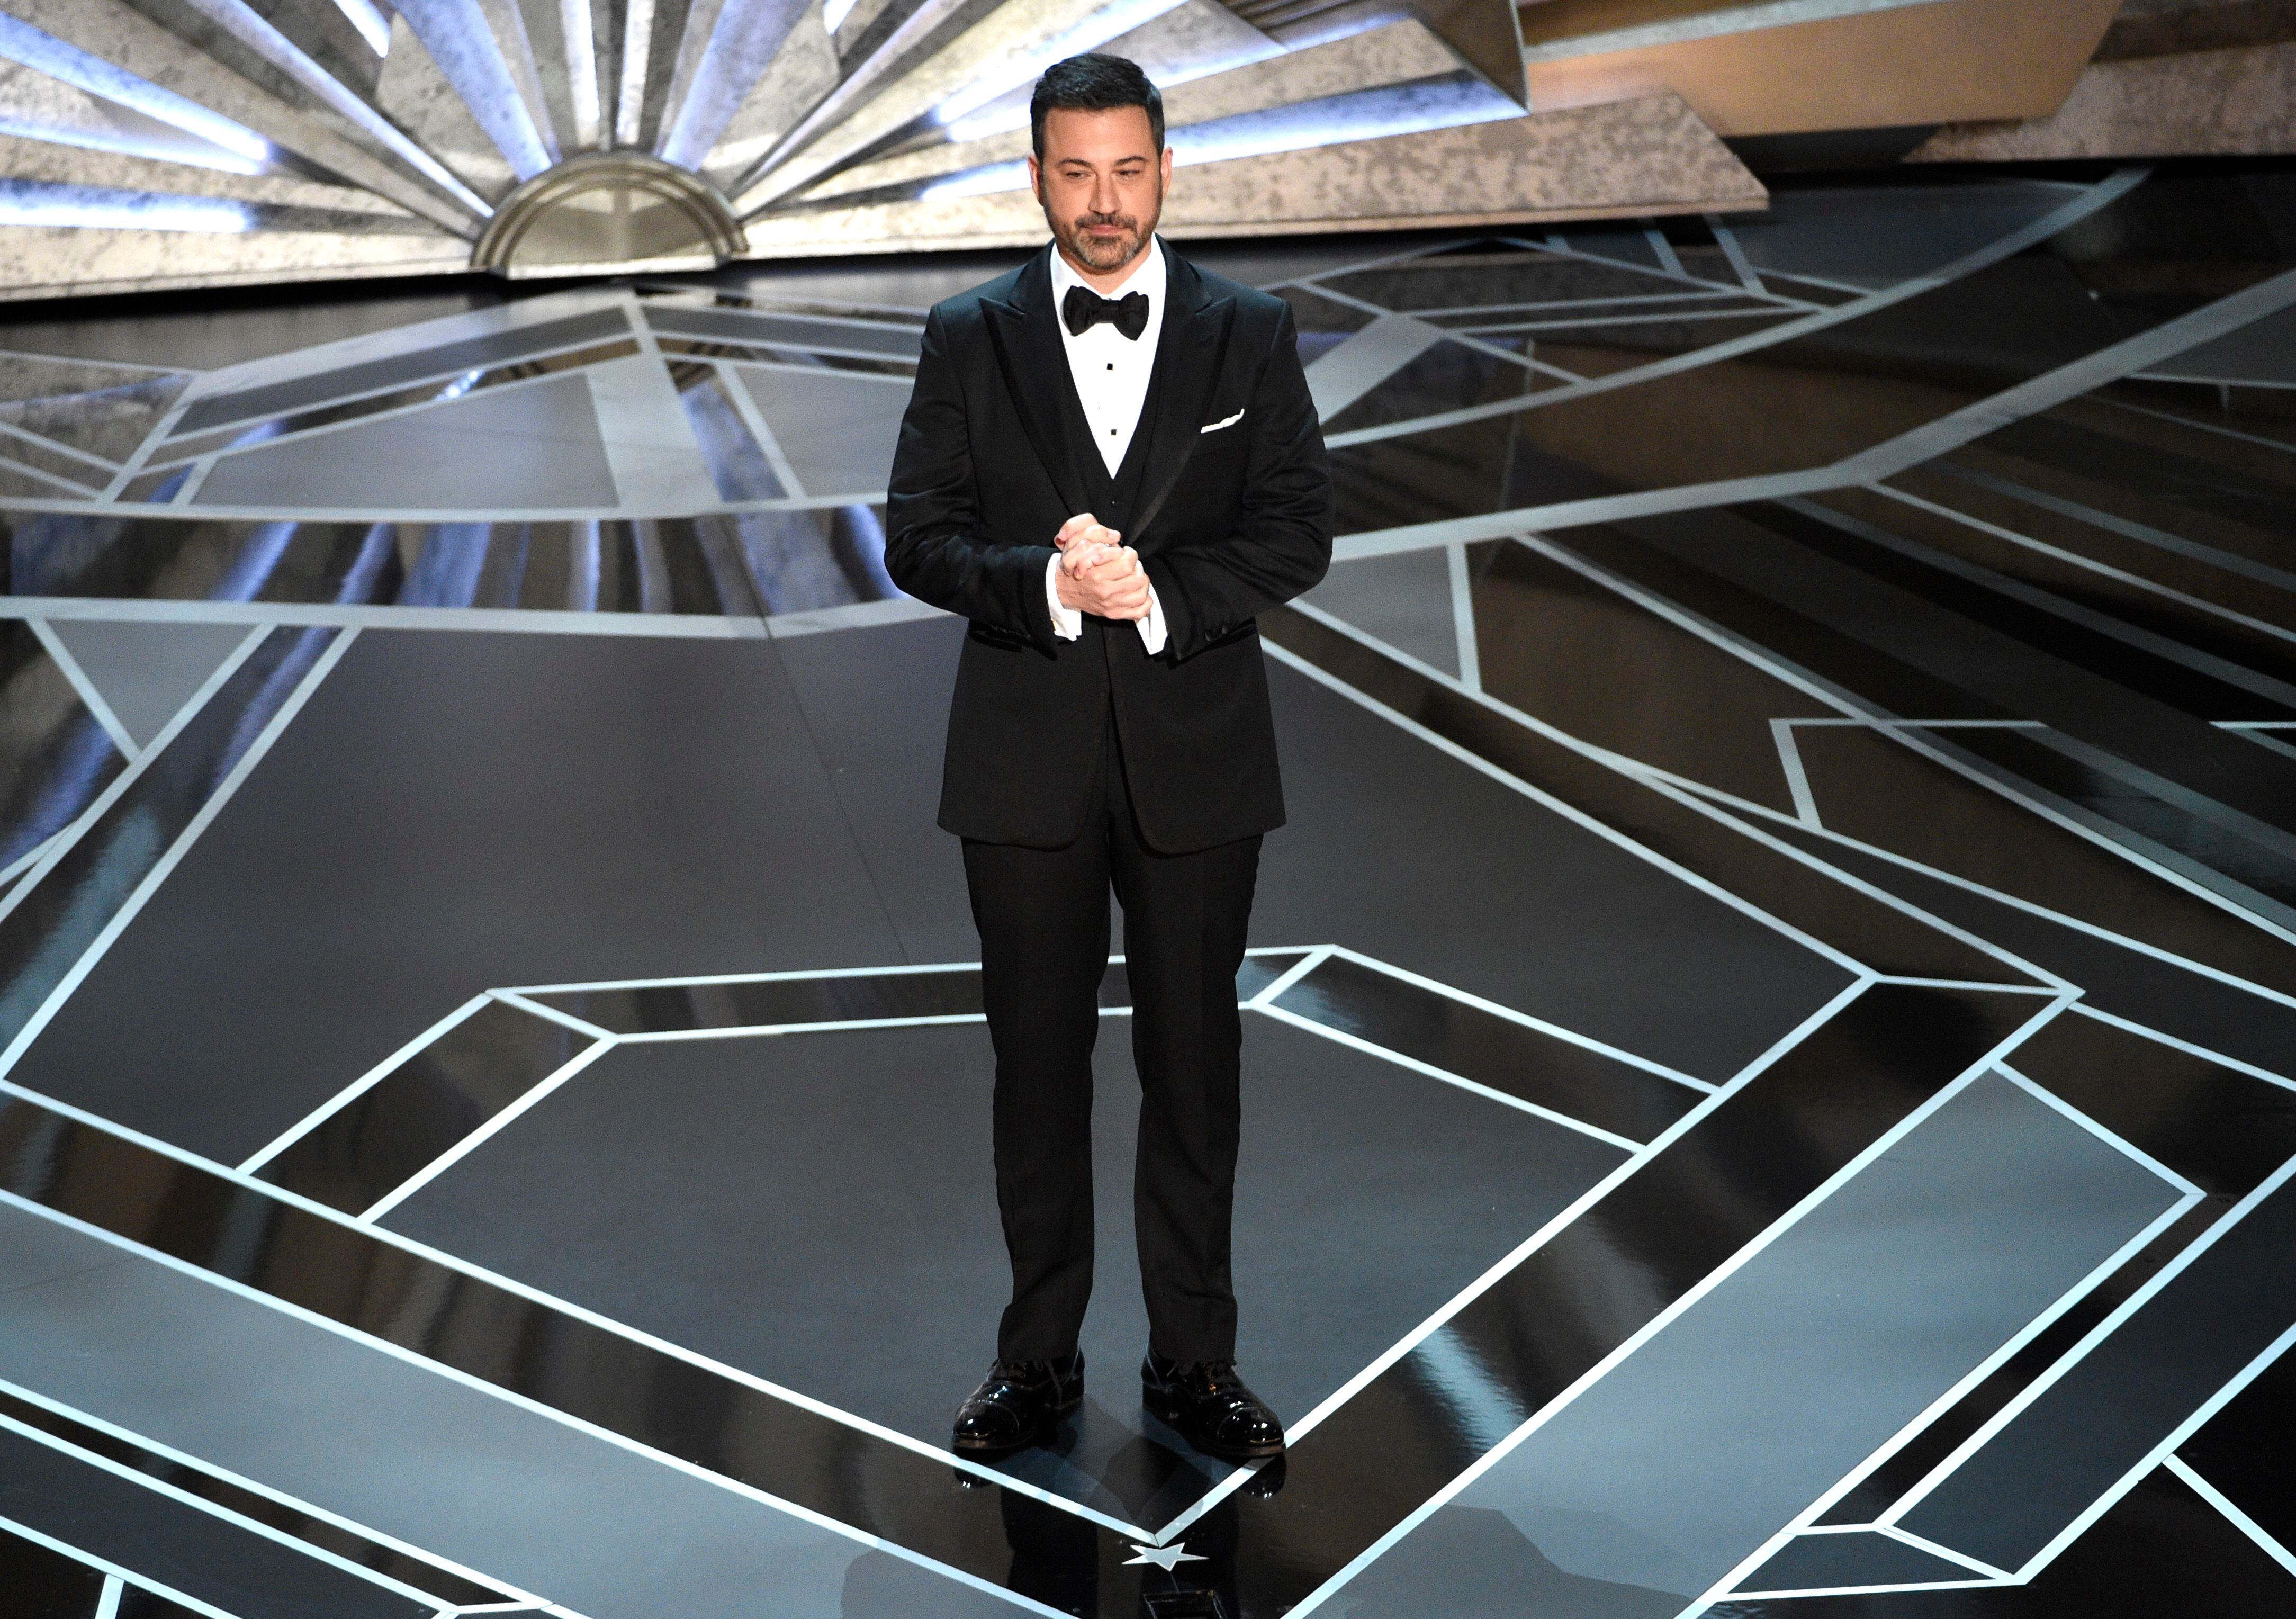 ARCHIVO - El maestro de ceremonias Jimmy Kimmel habla en los Oscar en Los Angeles el 4 de marzo de 2018. Kimmel volverá como anfitrión para los Oscar el 12 de marzo de 2023. (Foto Chris Pizzello/Invision/AP, archivo)